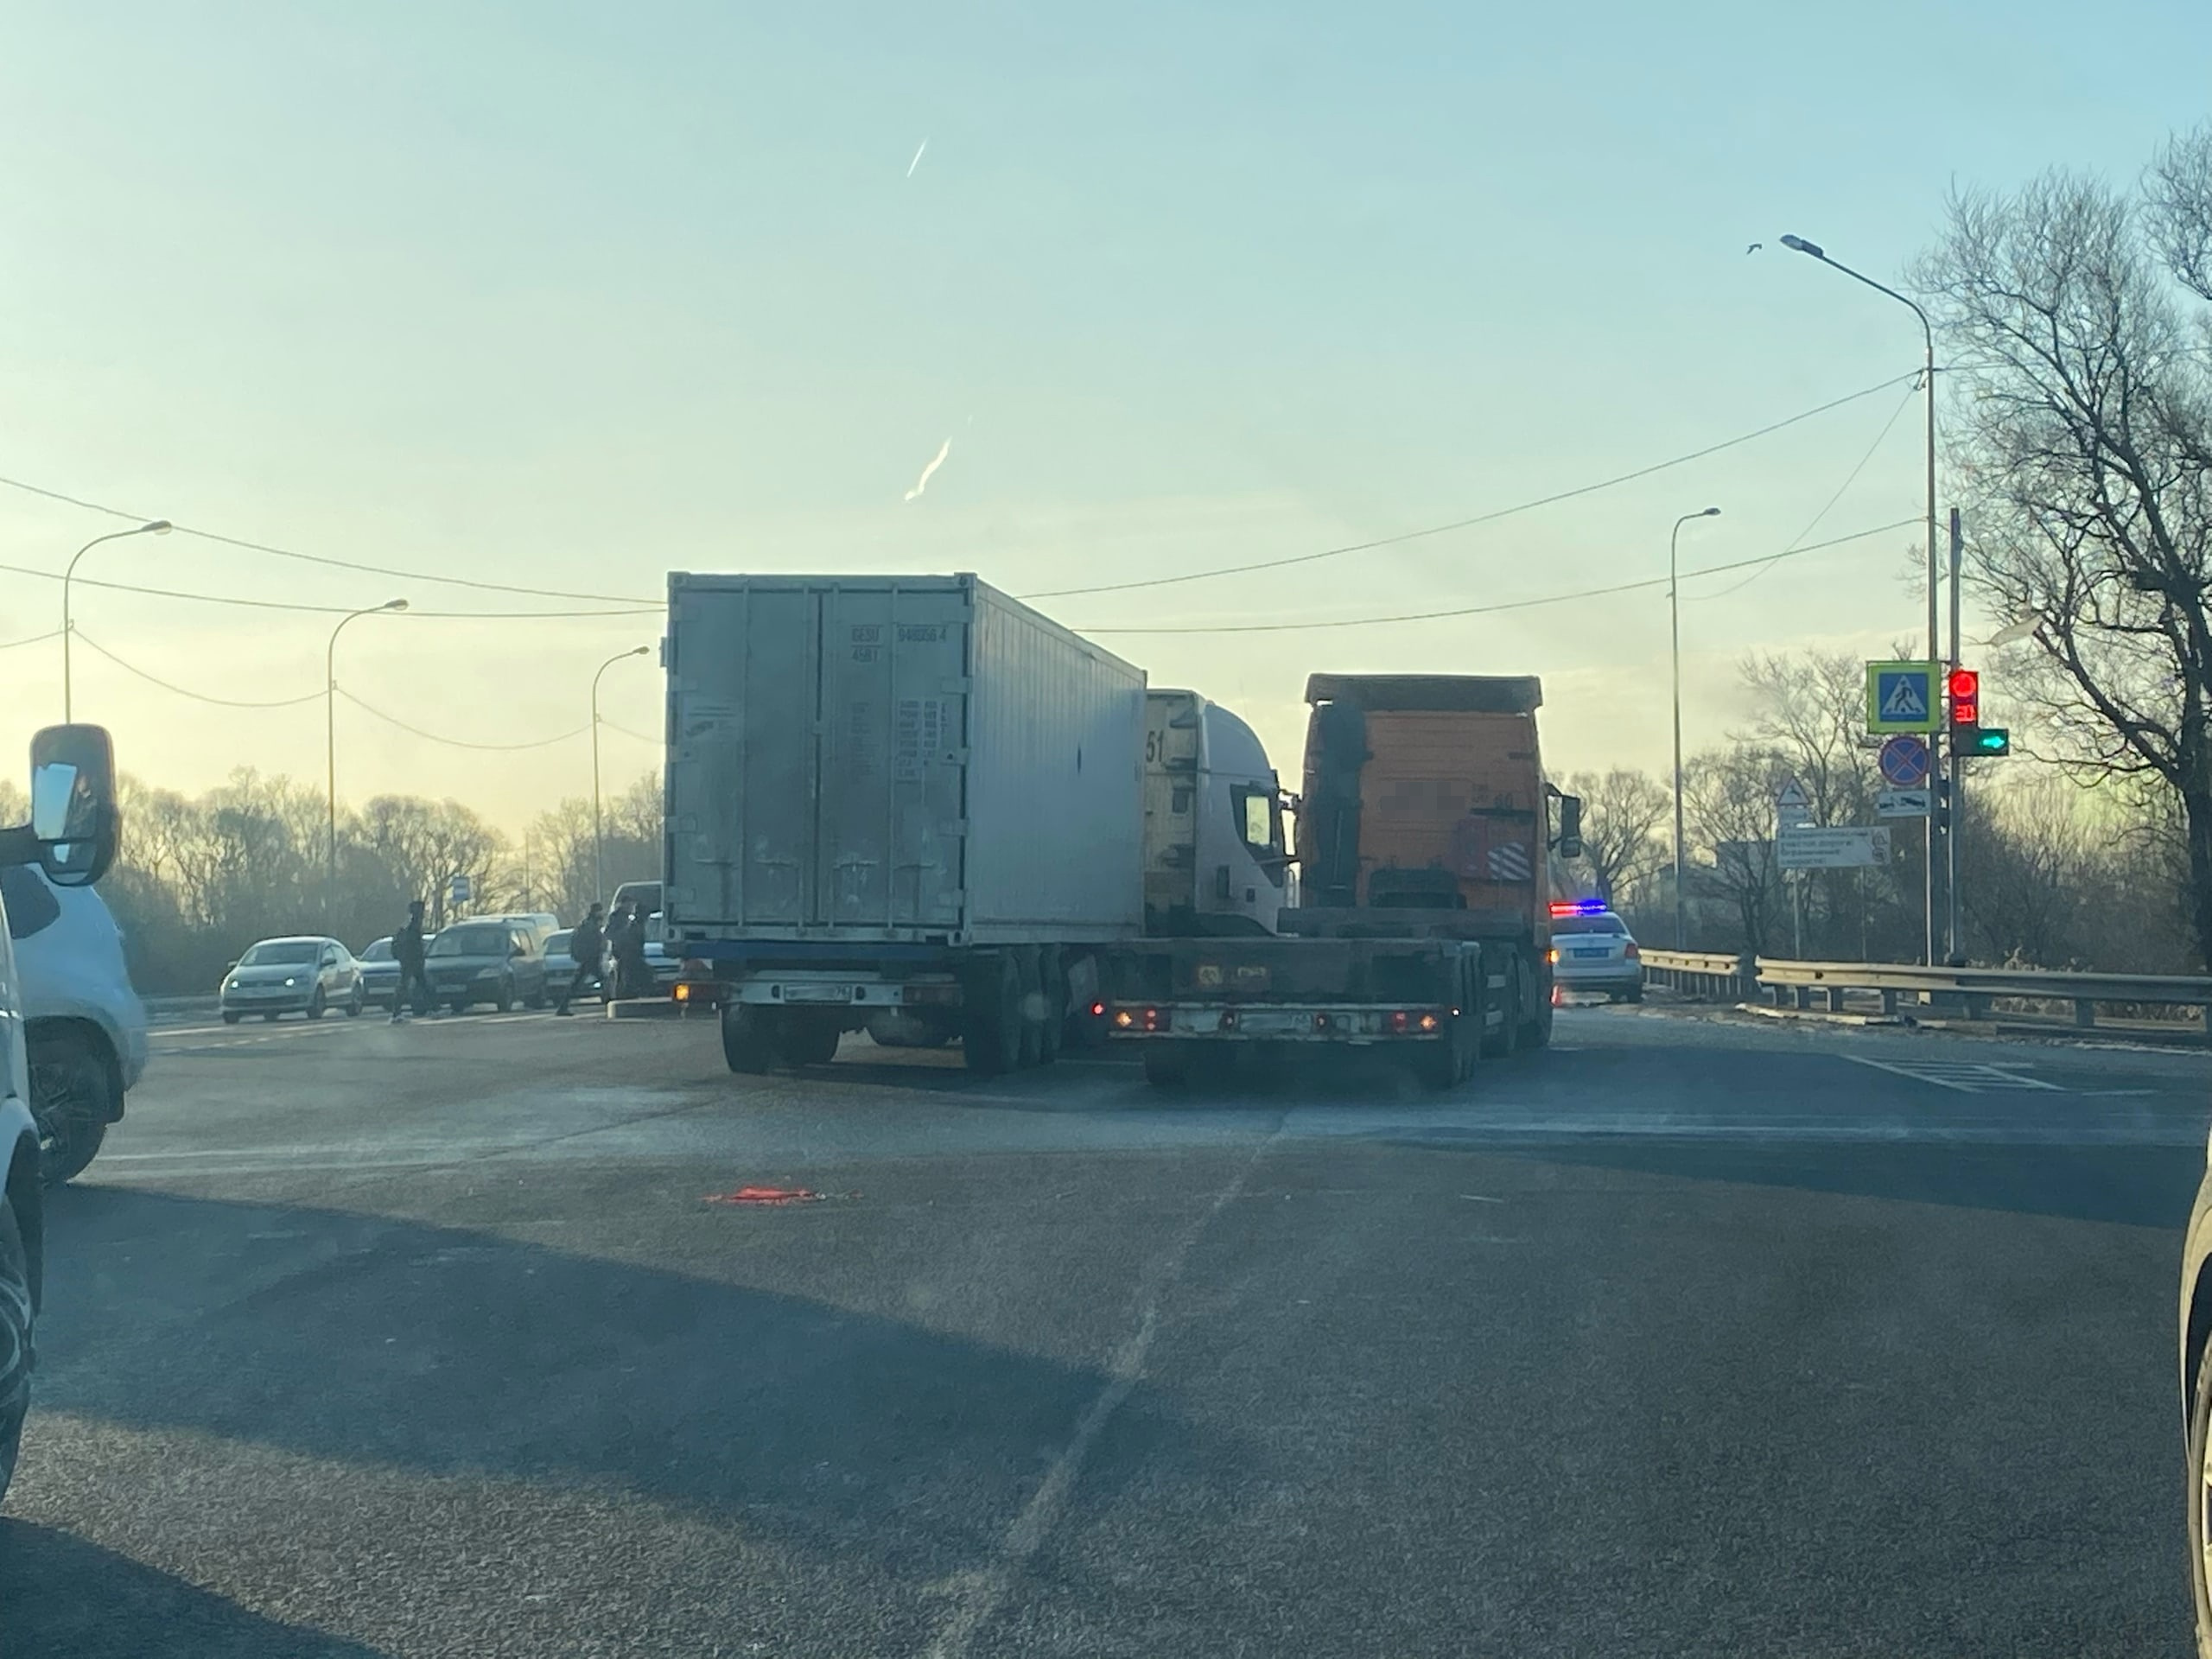 Меньшие, чем обычно. Пробки водители в Петербурге компенсировали встречей фур и помехами автобусам